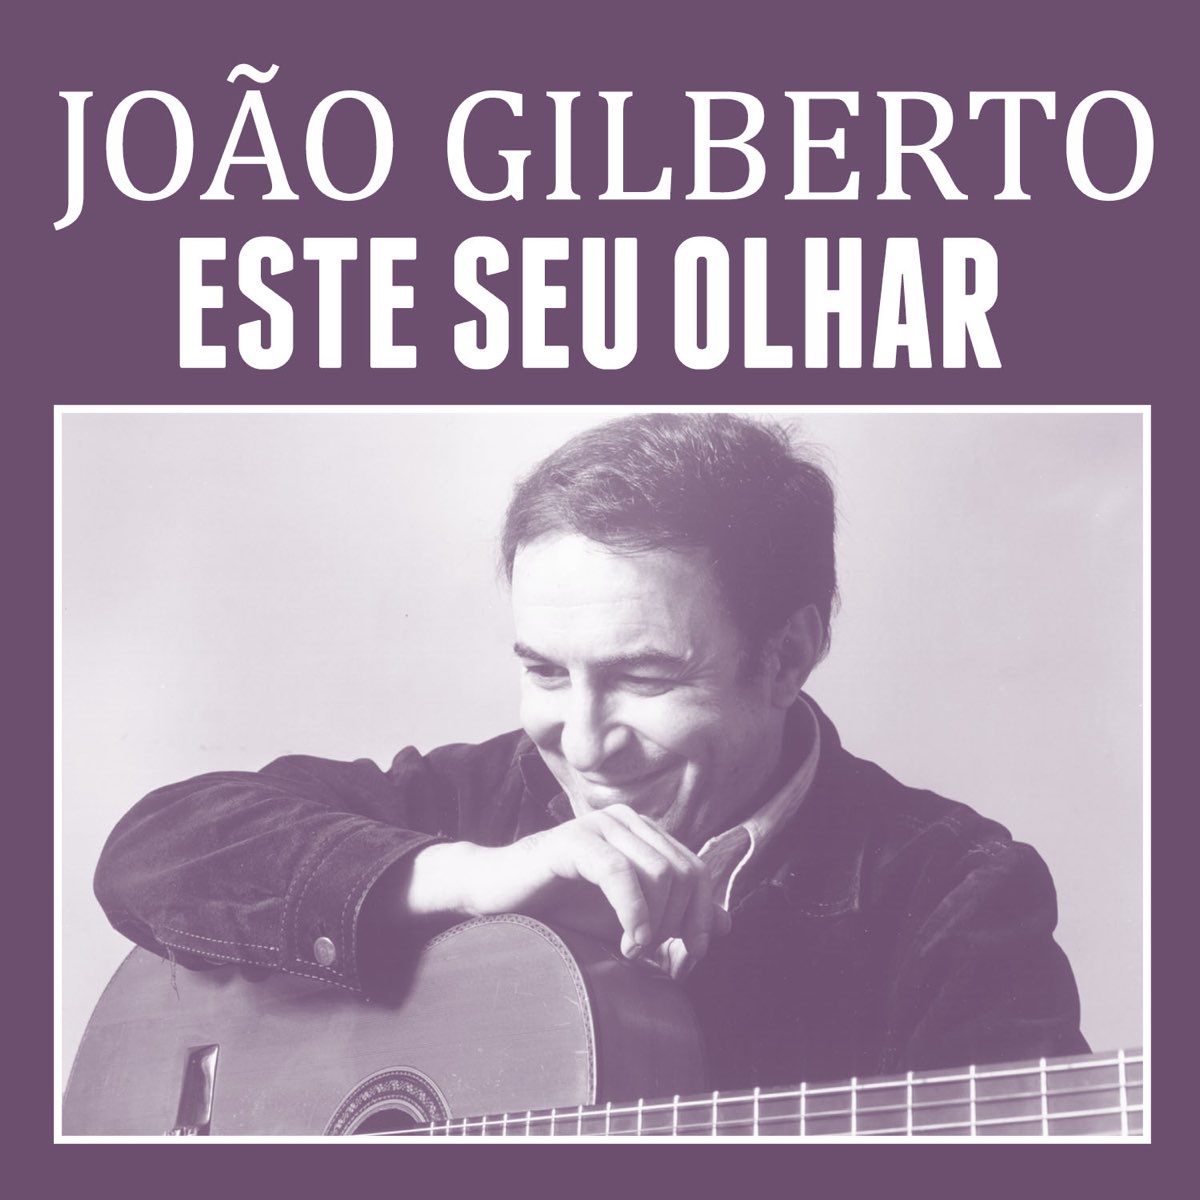 João Gilberto — Este Seu Olhar cover artwork